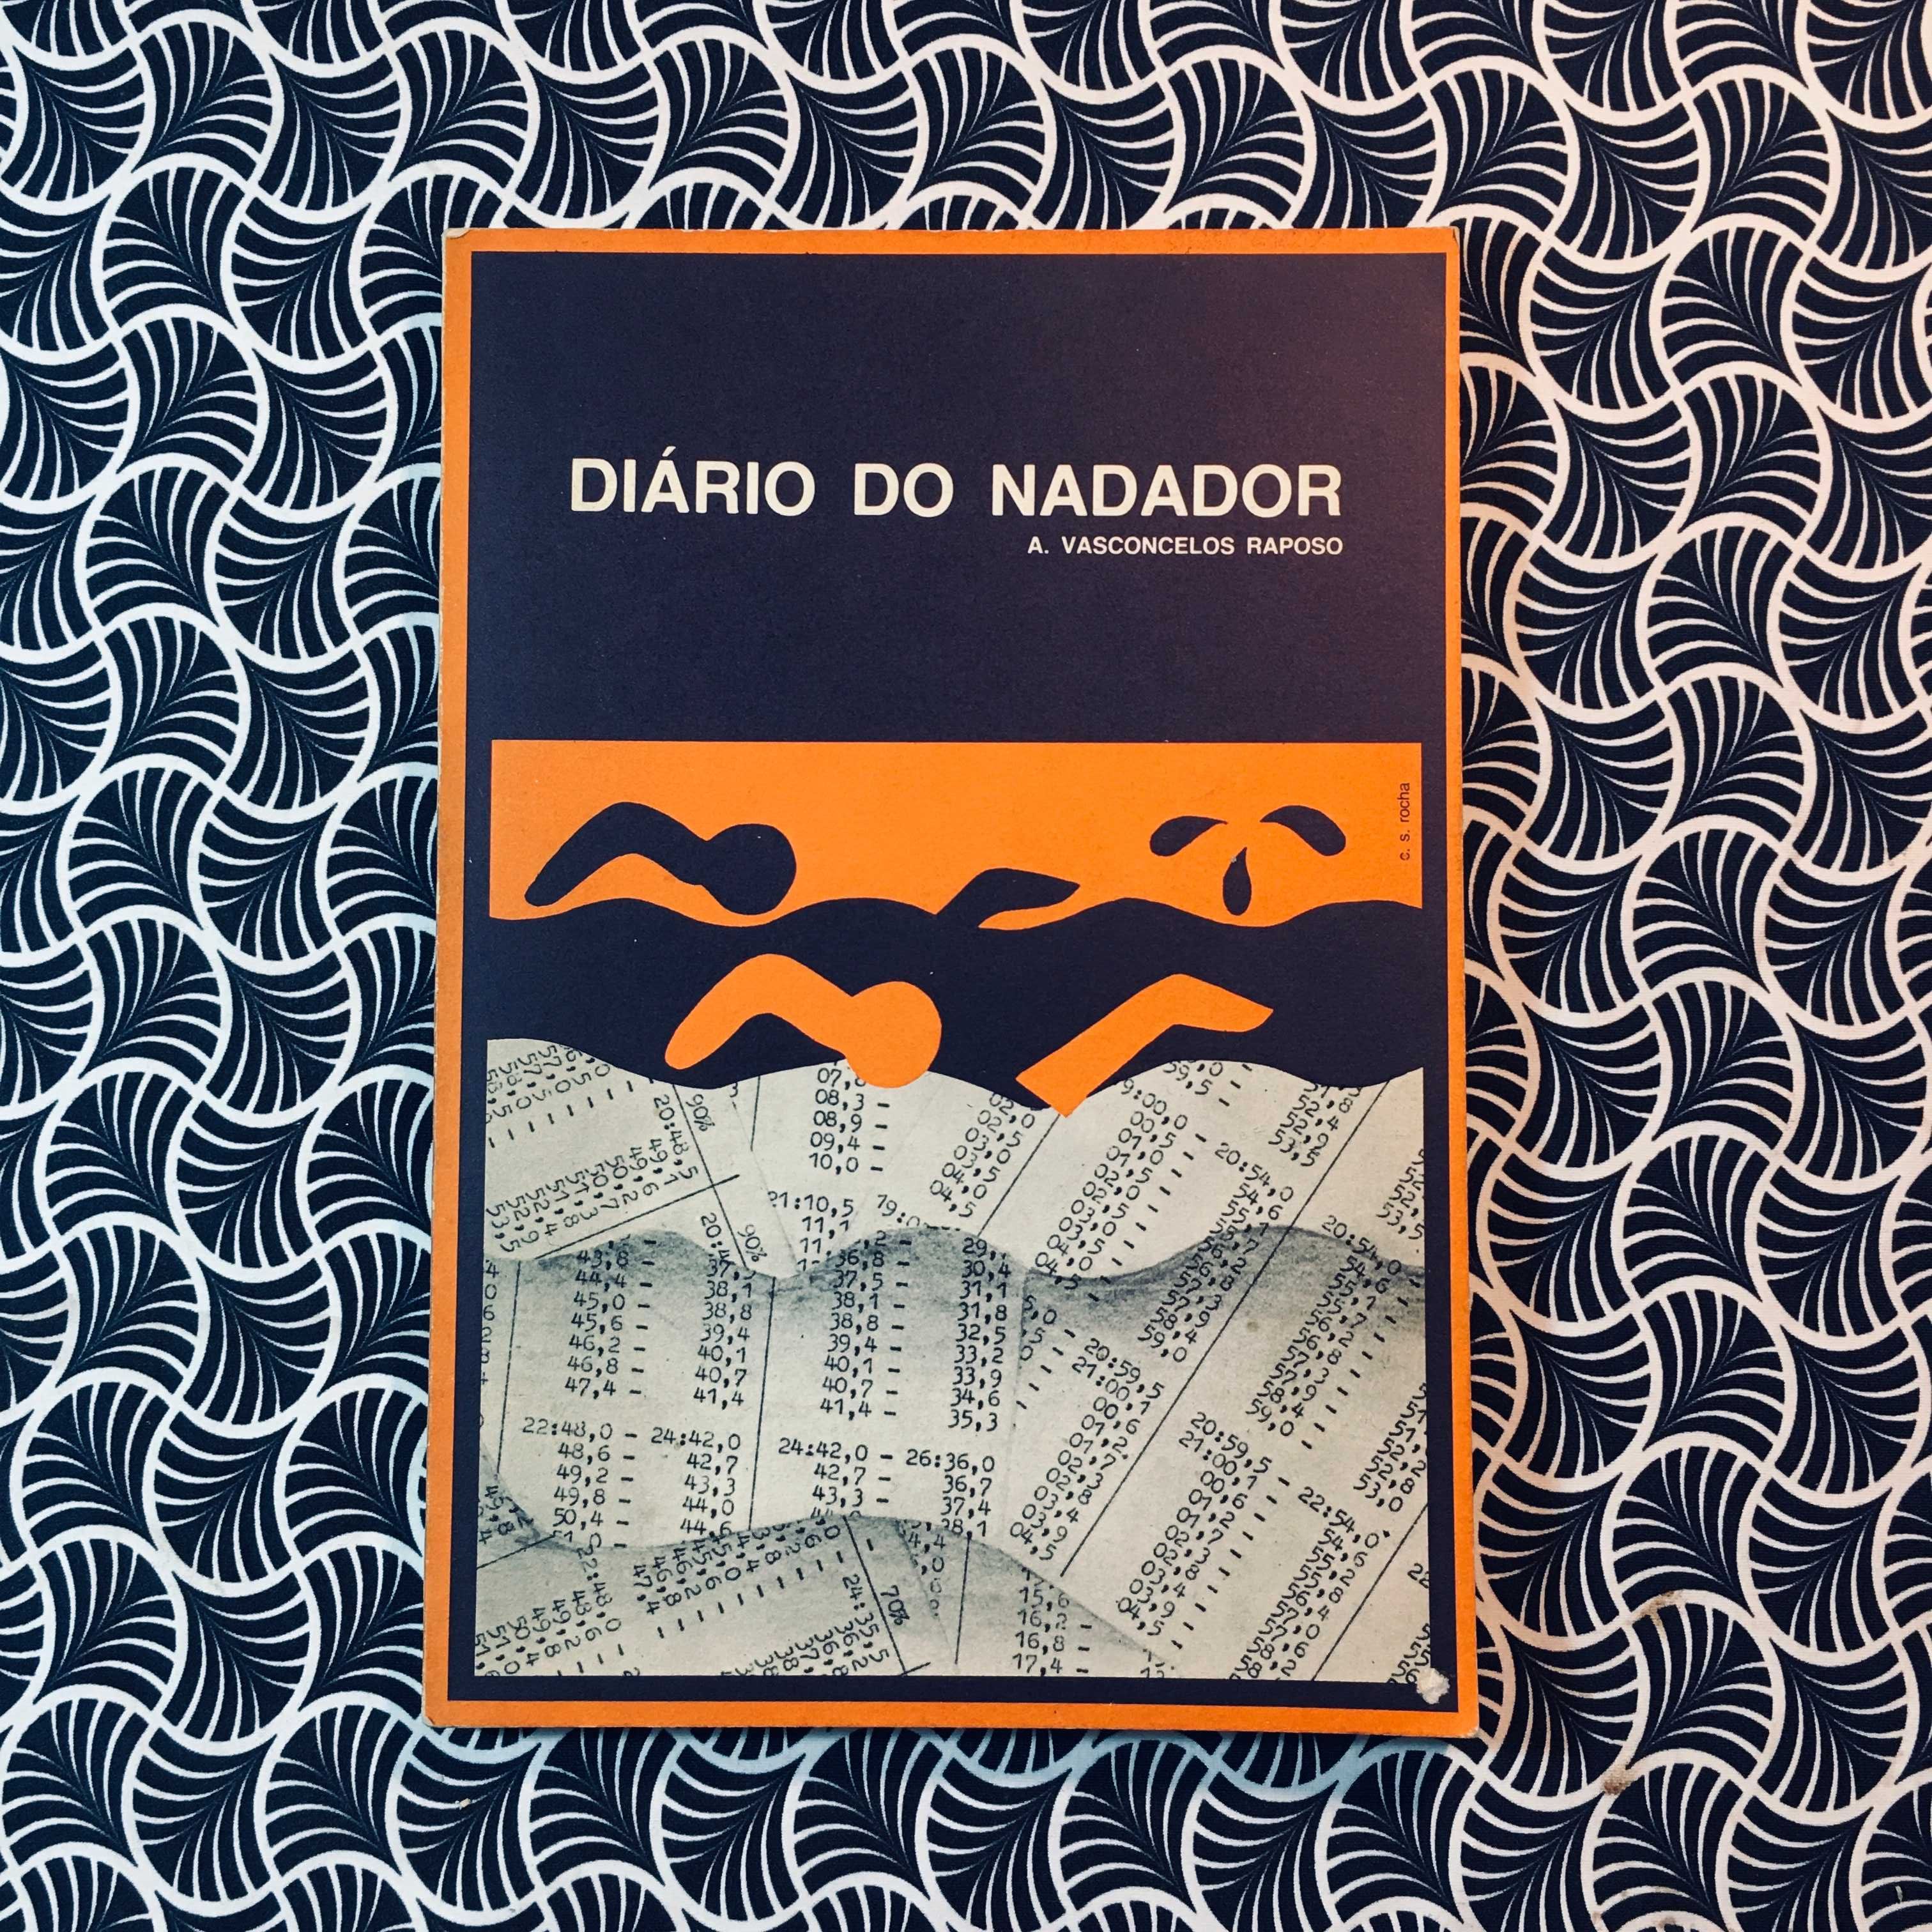 Diário do Nadador - A. Vasconcelos Raposo